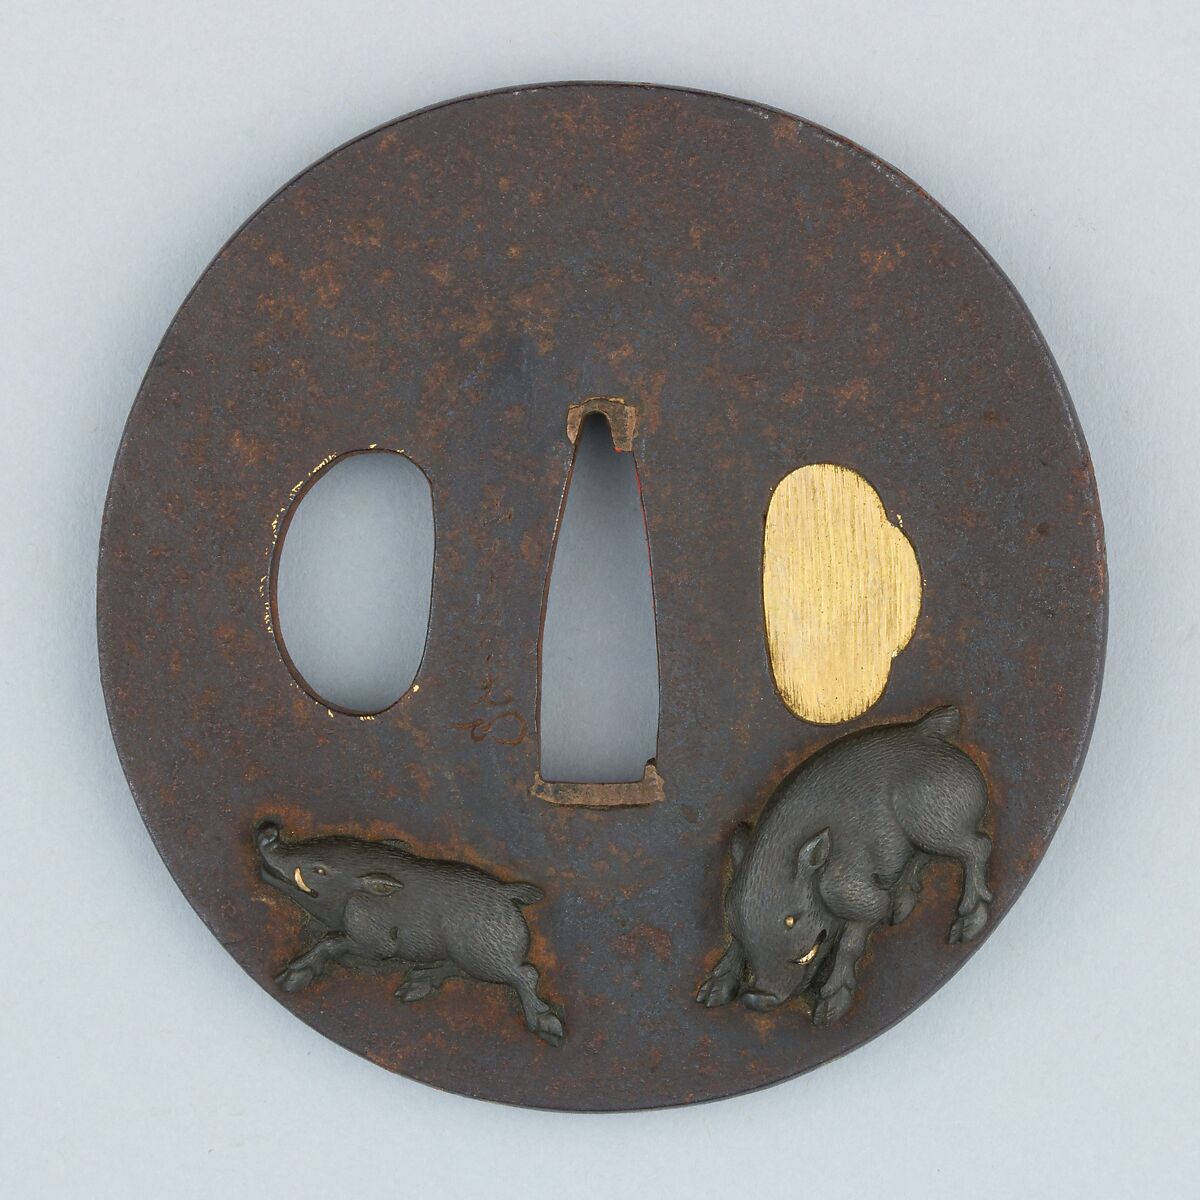 Sword Guard (Tsuba), Iron, copper-silver alloy (shibuichi), copper, Japanese 